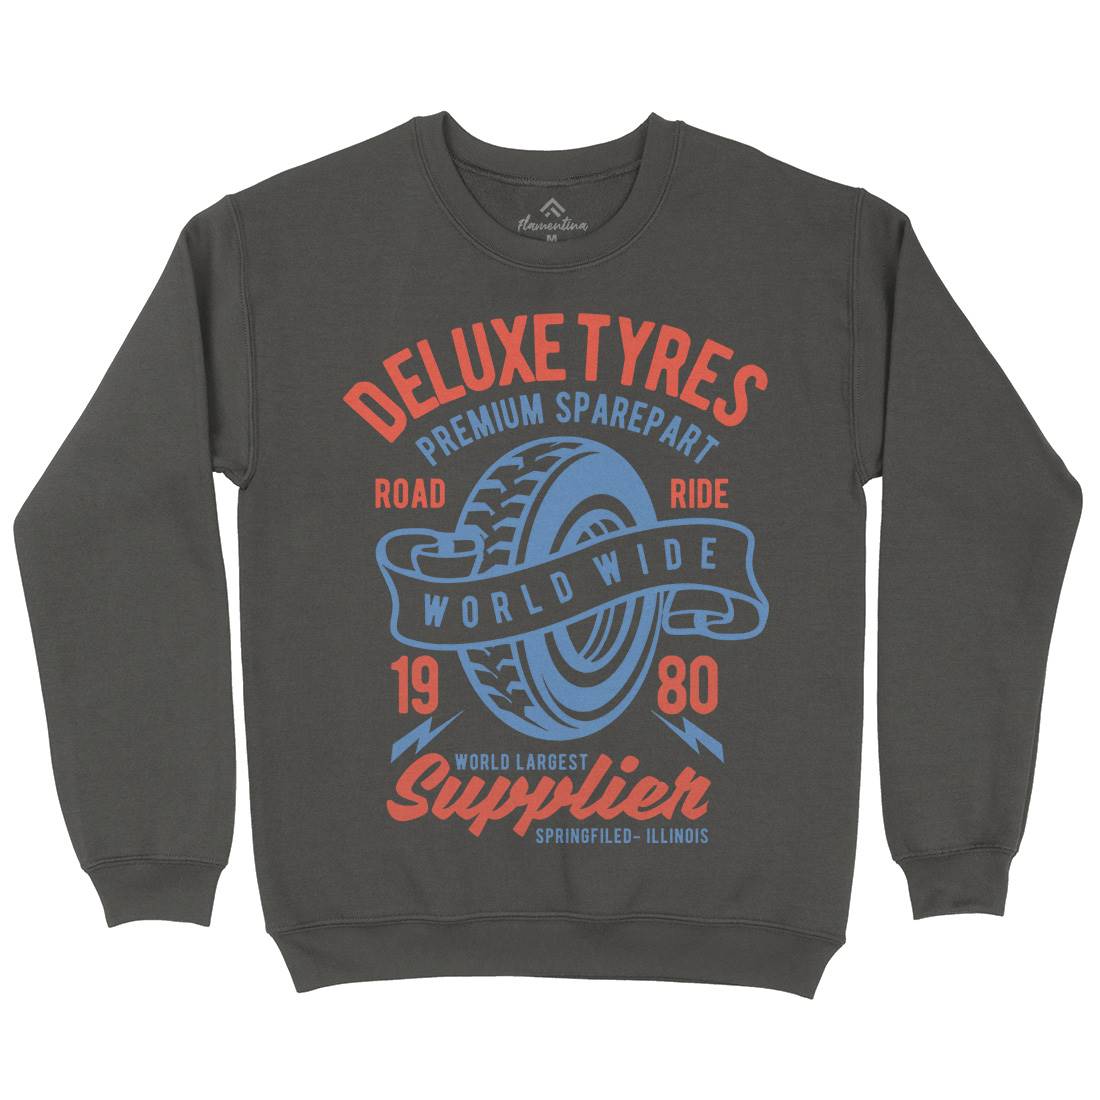 Deluxe Tyres Kids Crew Neck Sweatshirt Cars B204